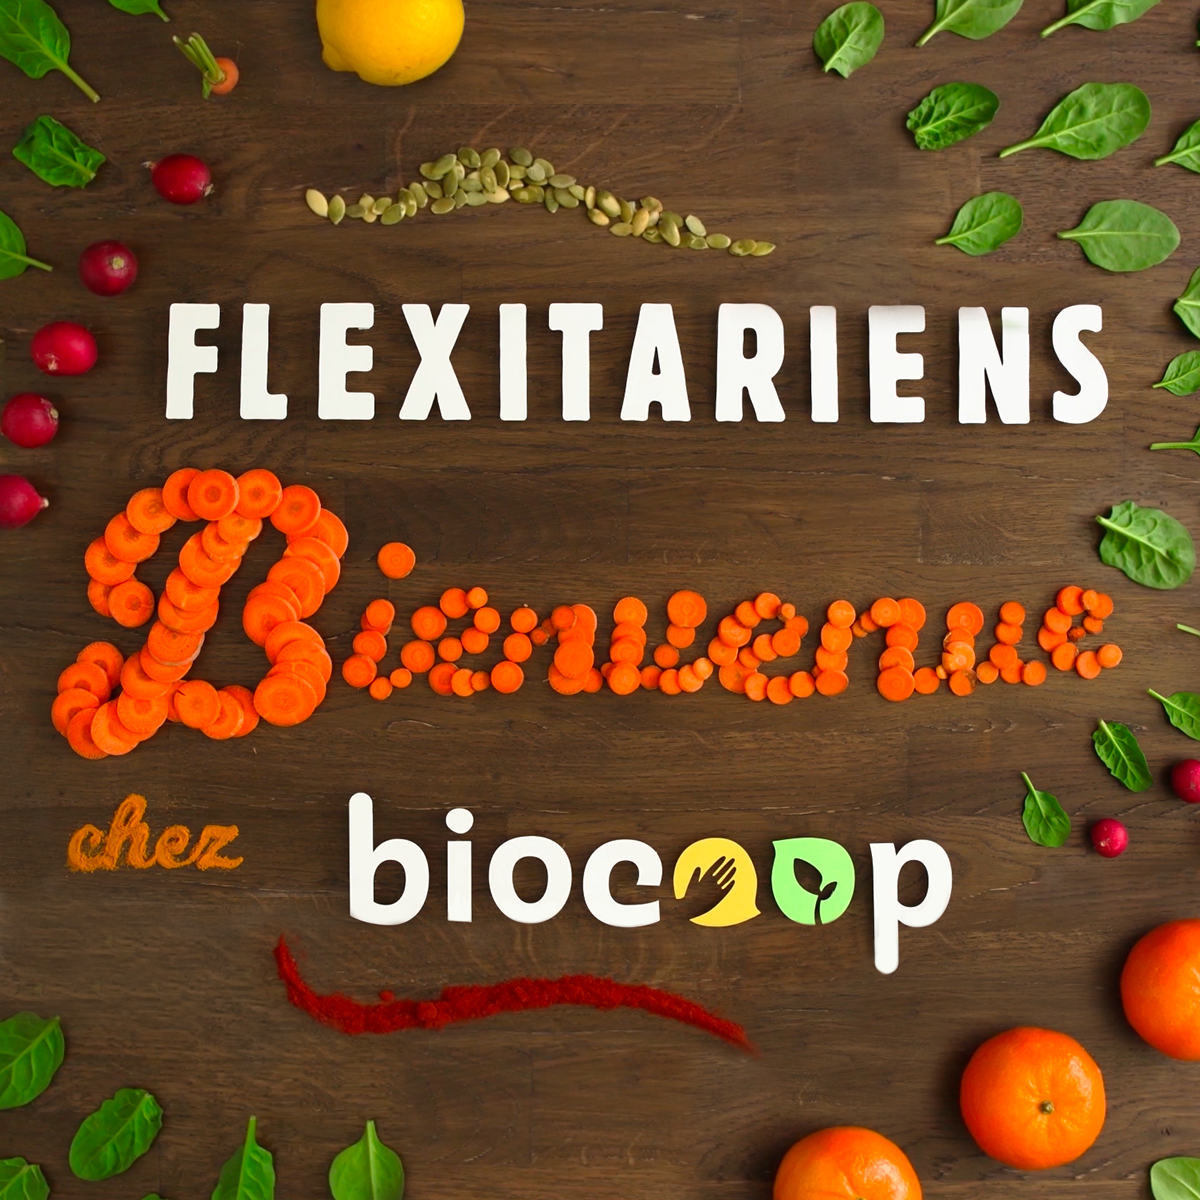 Biocoop s'engage pour une alimentation bio et flexitarienne 